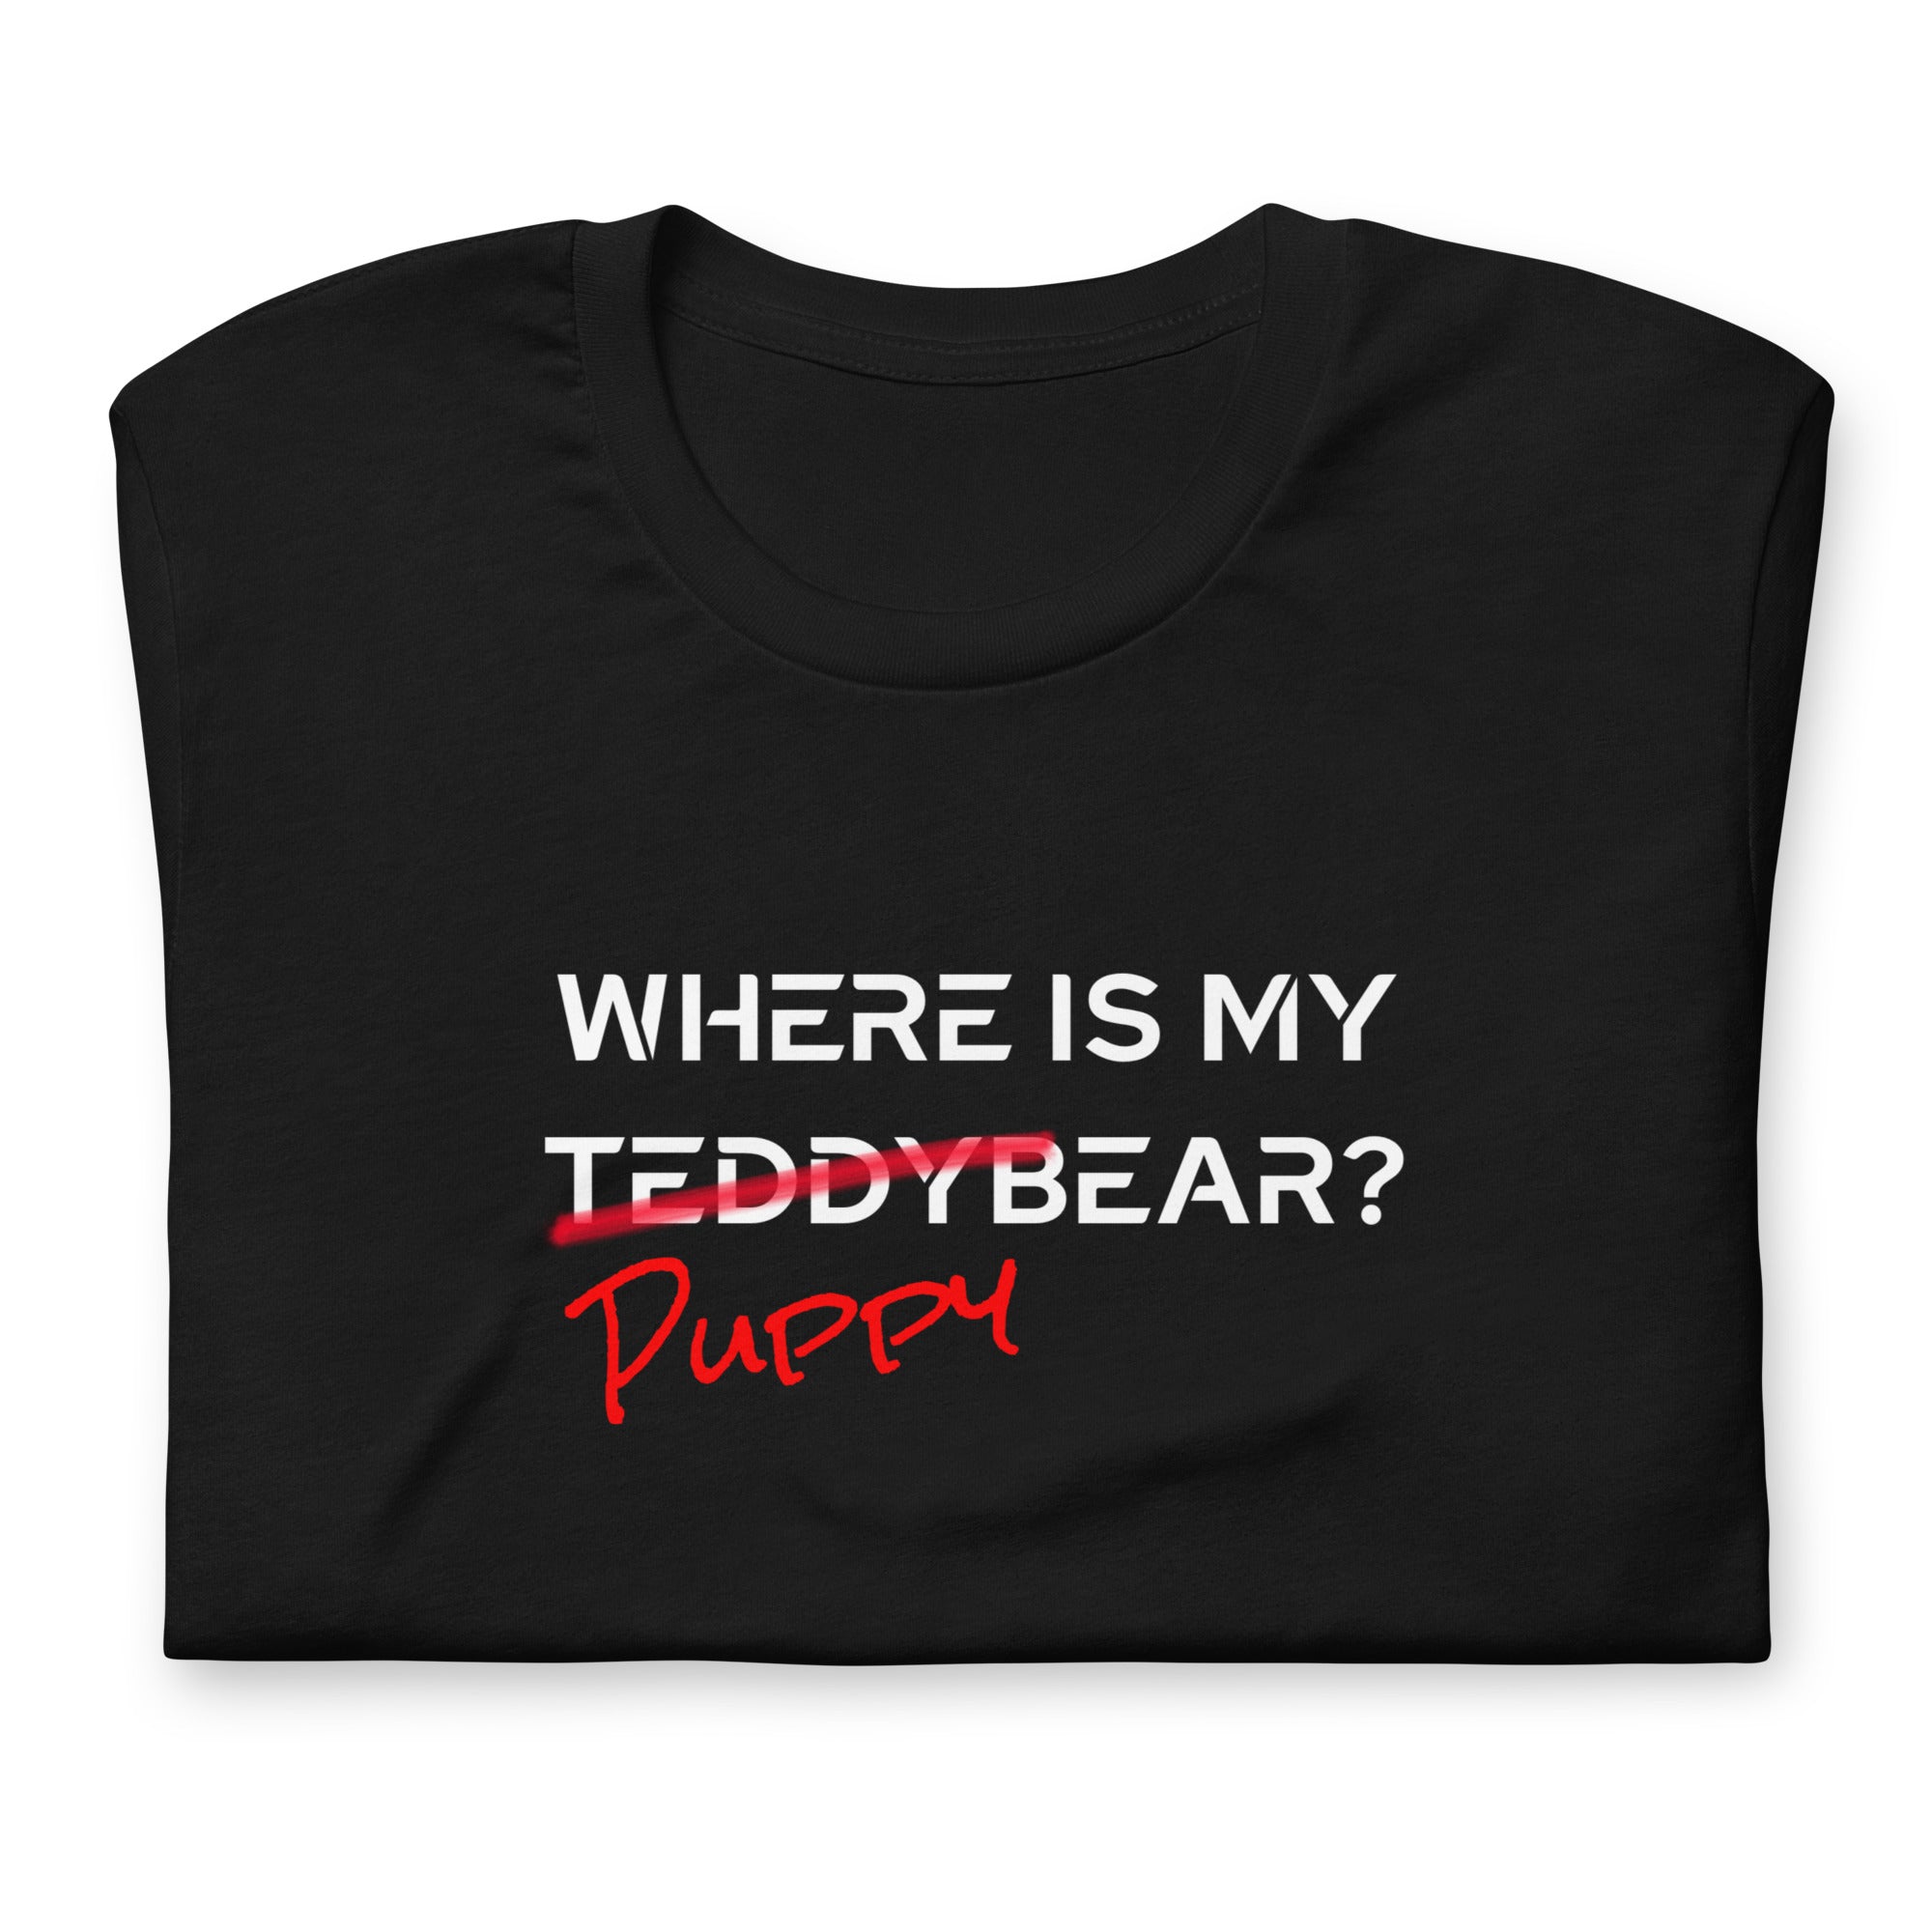 Where is my PuppyBear? / T-Shirt